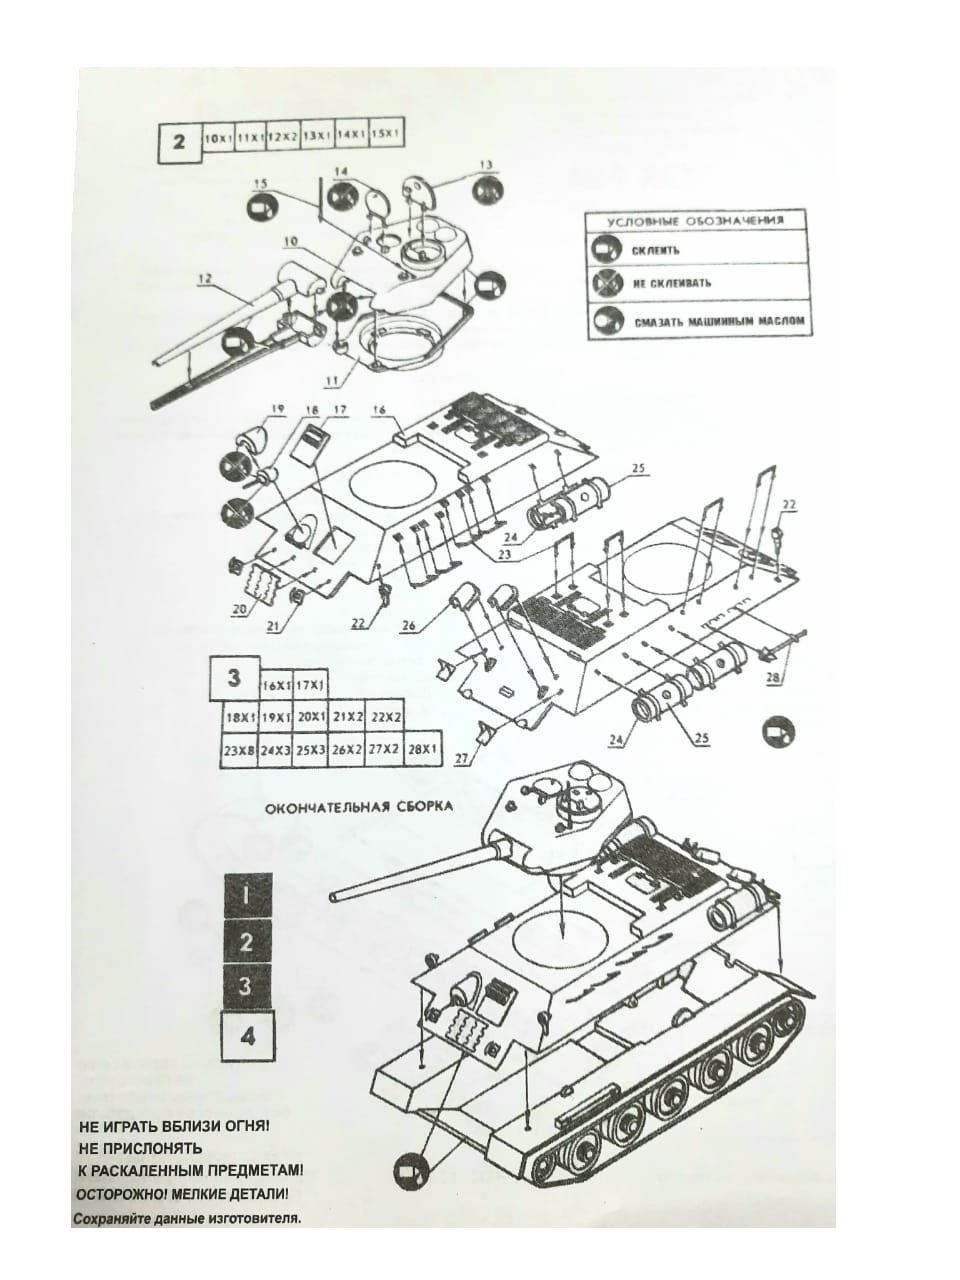 Сборная модель-копия.  "Танк Т-34"